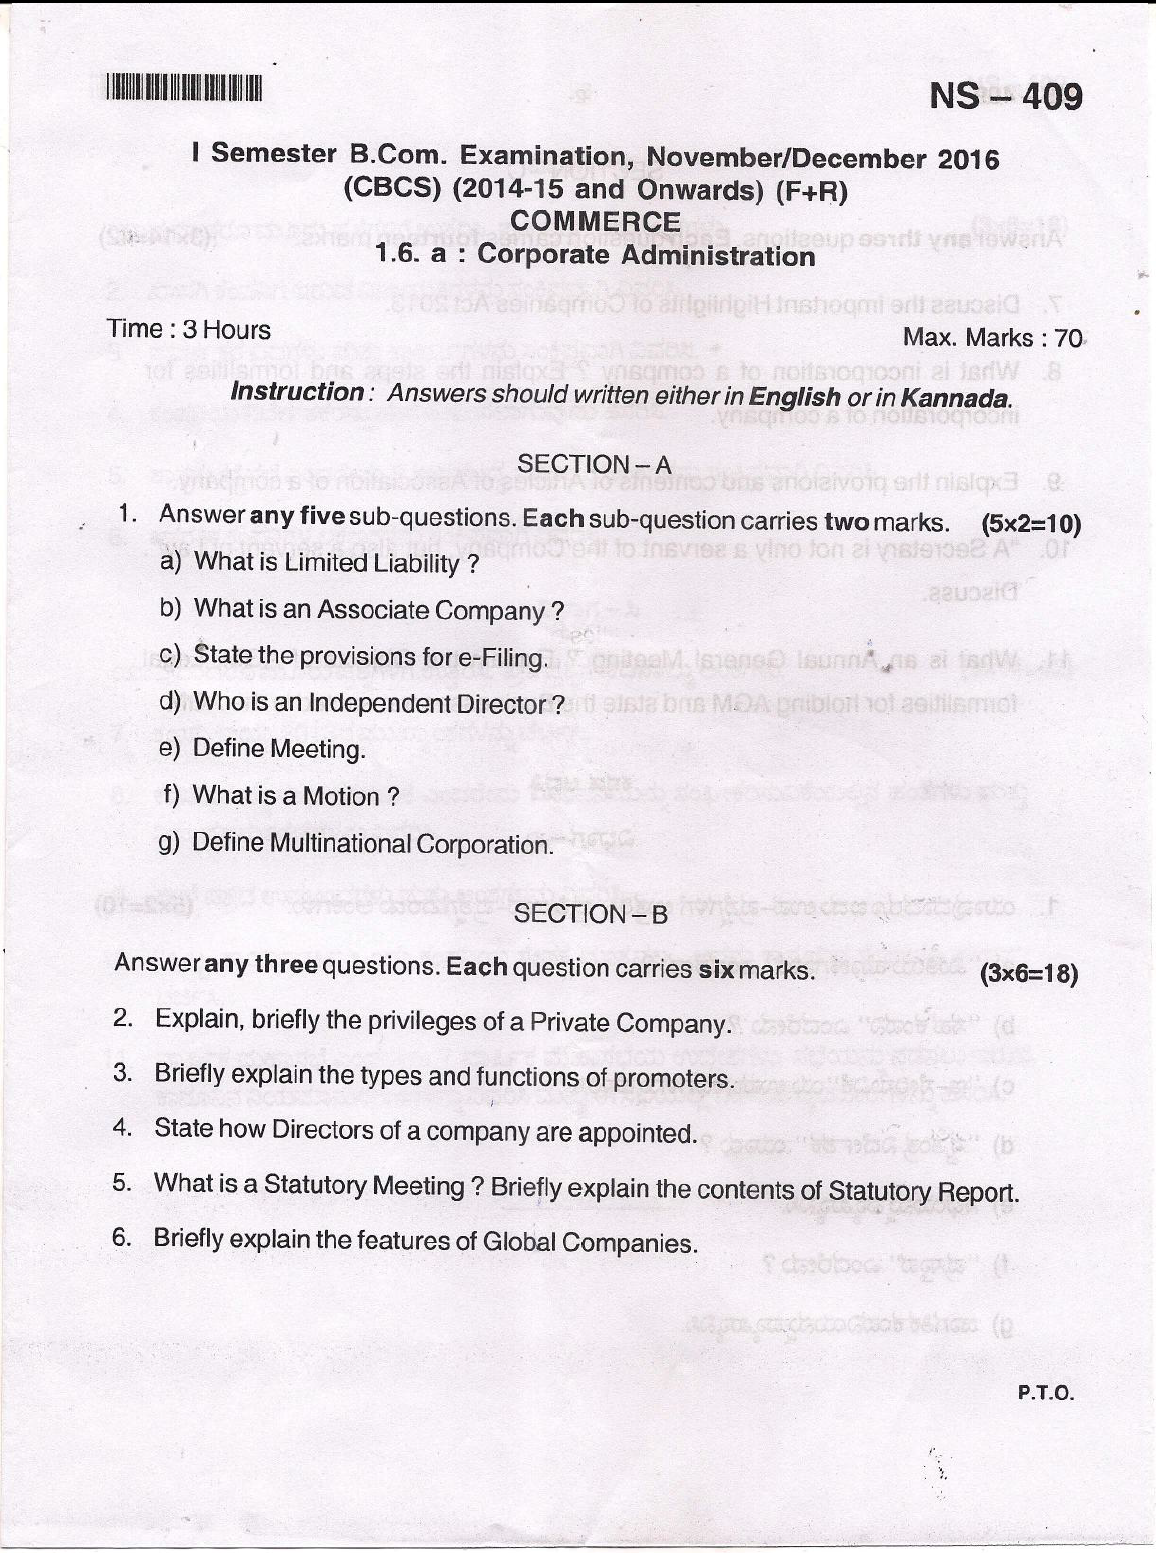 Bangalore University B Com Commerce 1 6 A Corporate Administration Nov Dec 16 Question Paper University Question Papers